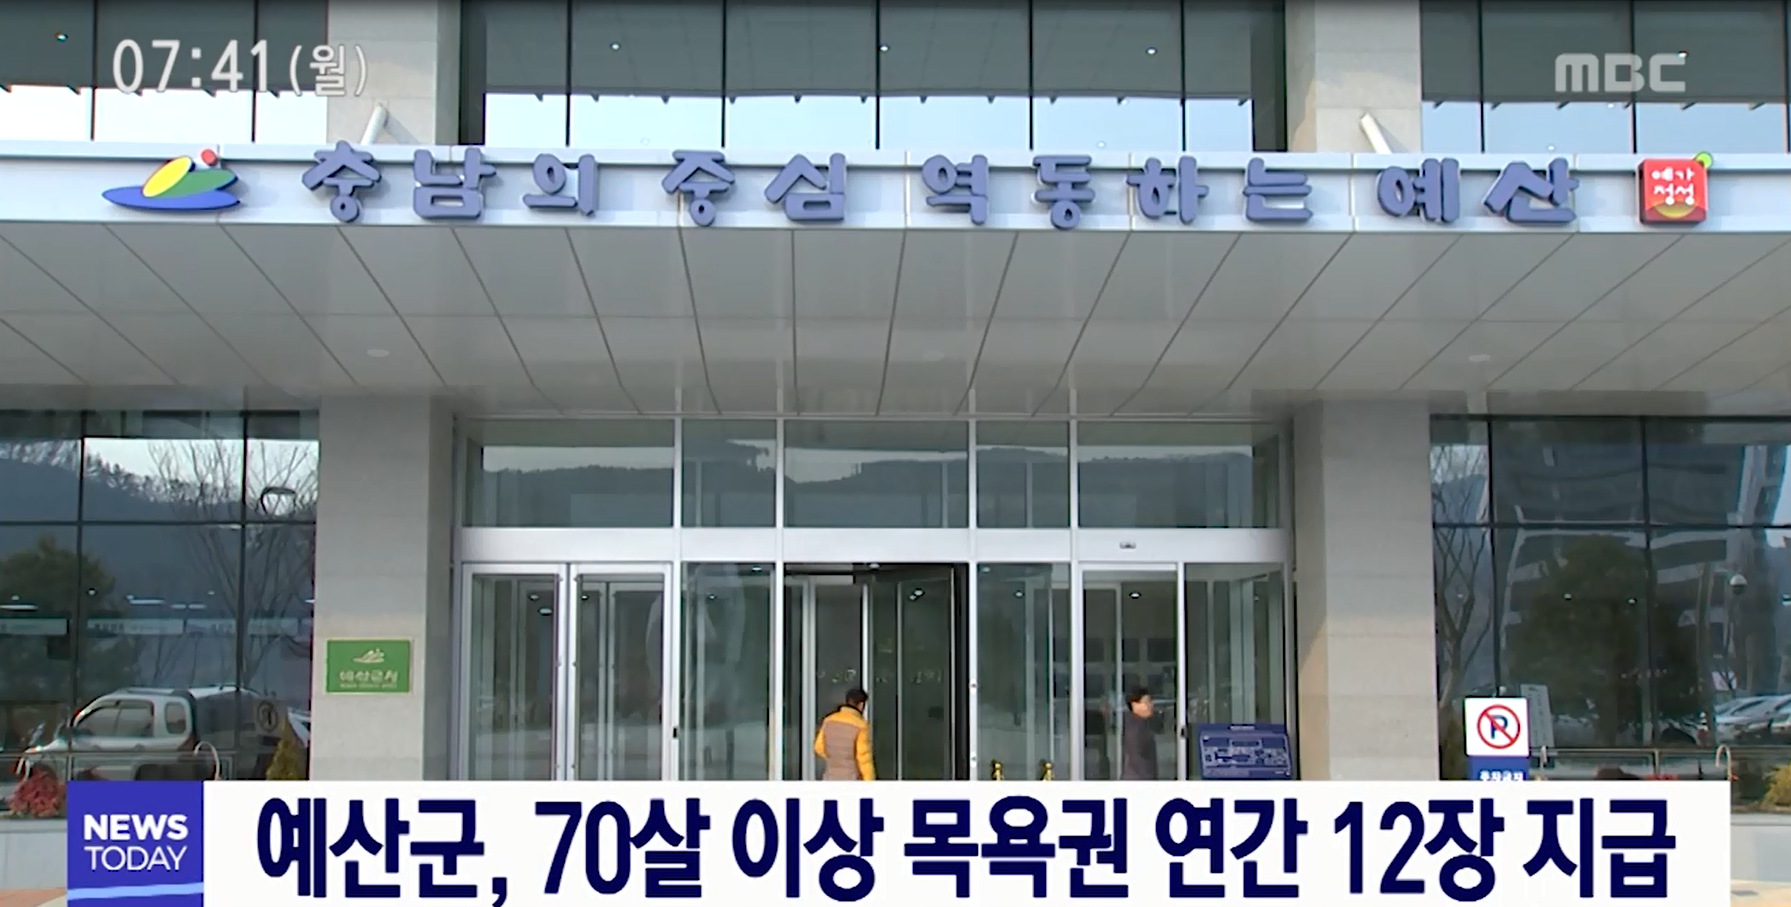 예산군 70살 이상 목욕권 연간12장 지급(MBC뉴스)